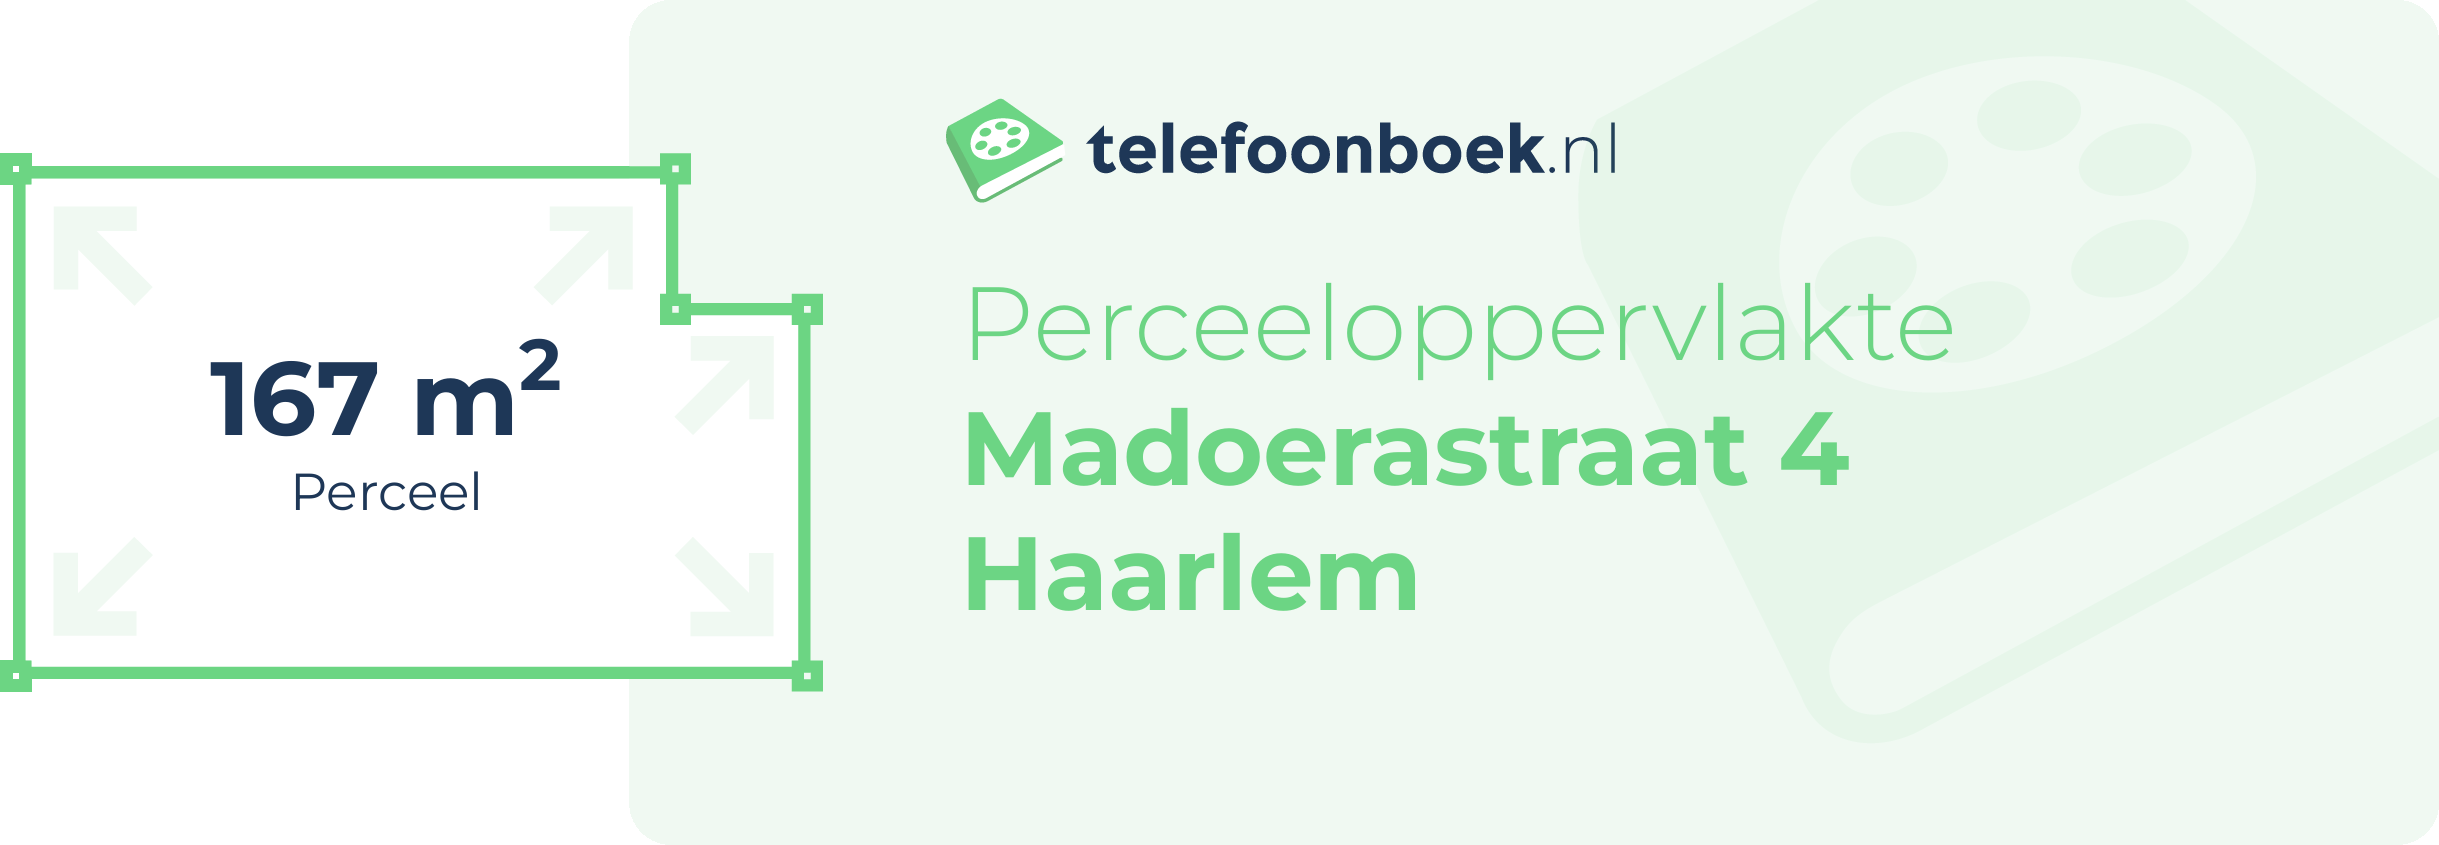 Perceeloppervlakte Madoerastraat 4 Haarlem